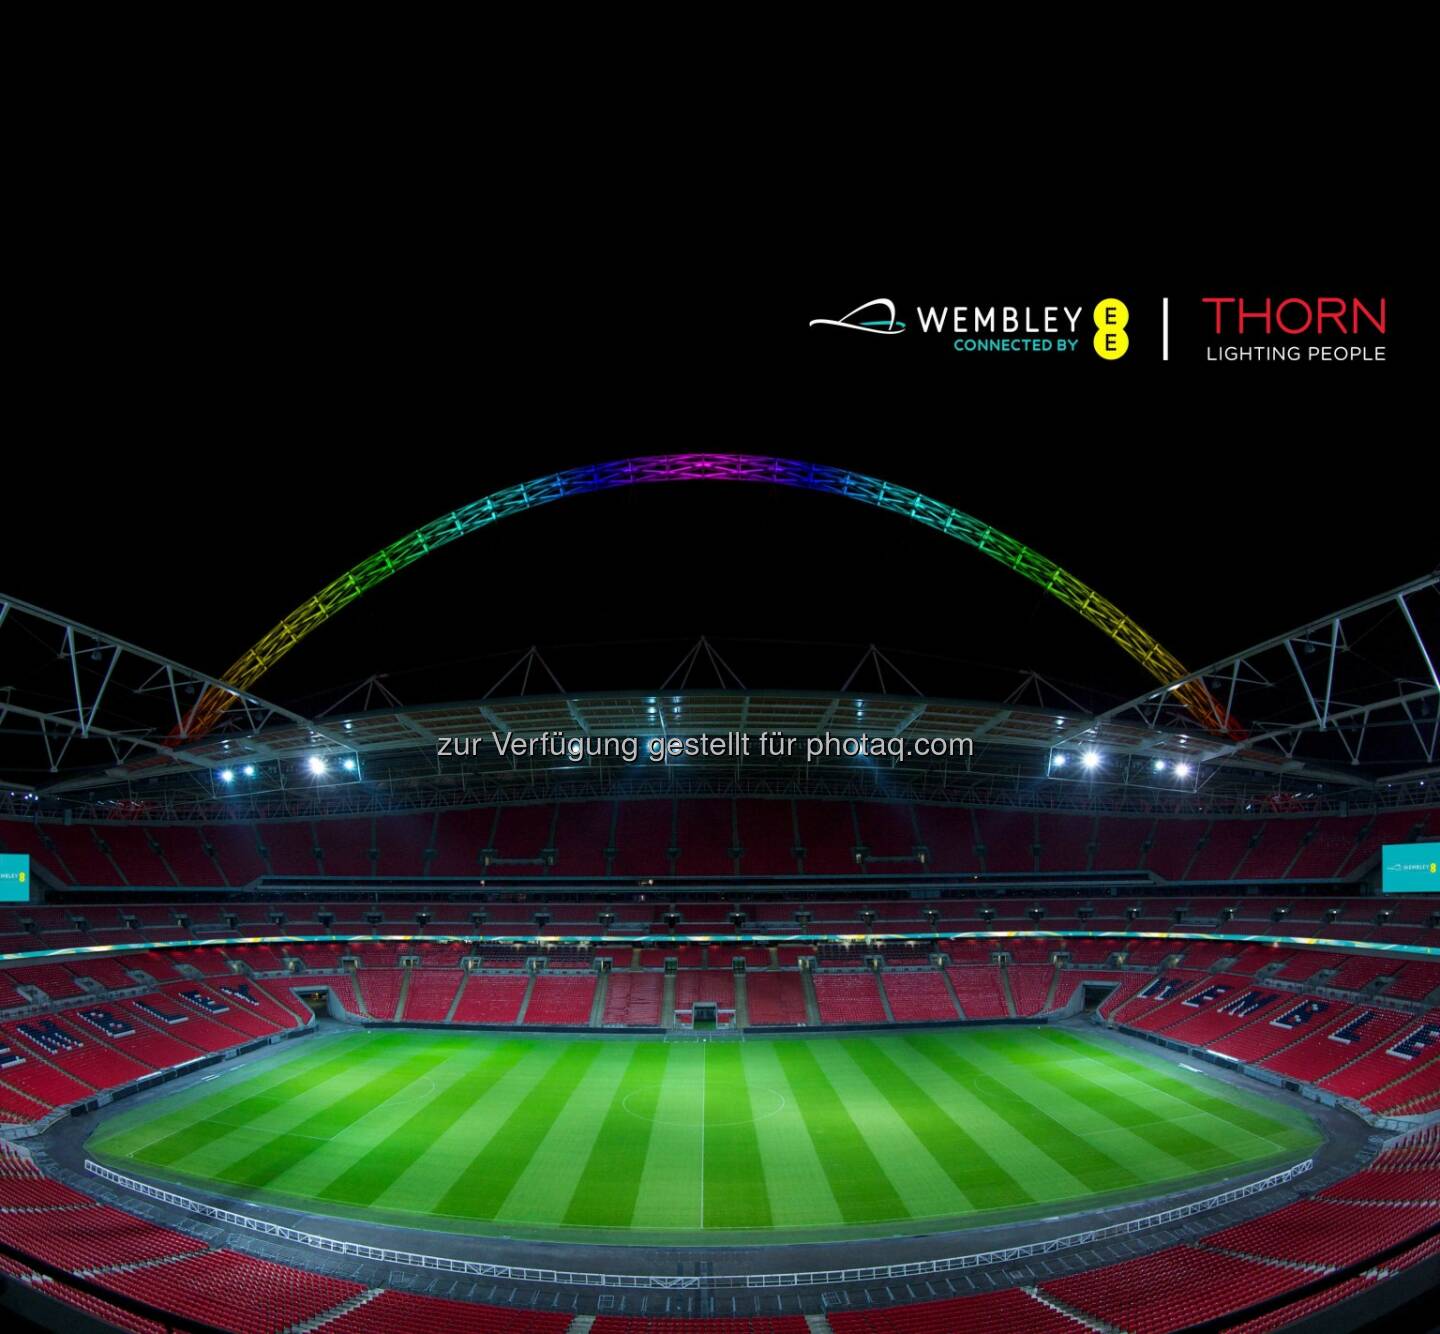 Thorn, eine Marke der Zumtobel Group, ist seit vier Jahrzehnten Lichtpartner des Wembley Stadions connected by EE. Im Zuge dieser langjährigen Zusammenarbeit hat der Spezialist für Außen- und Sportstättenbeleuchtung nun den Stadion-Bogen beleuchtet, der als 133 Meter hohes Wahrzeichen in ganz London sichtbar ist.